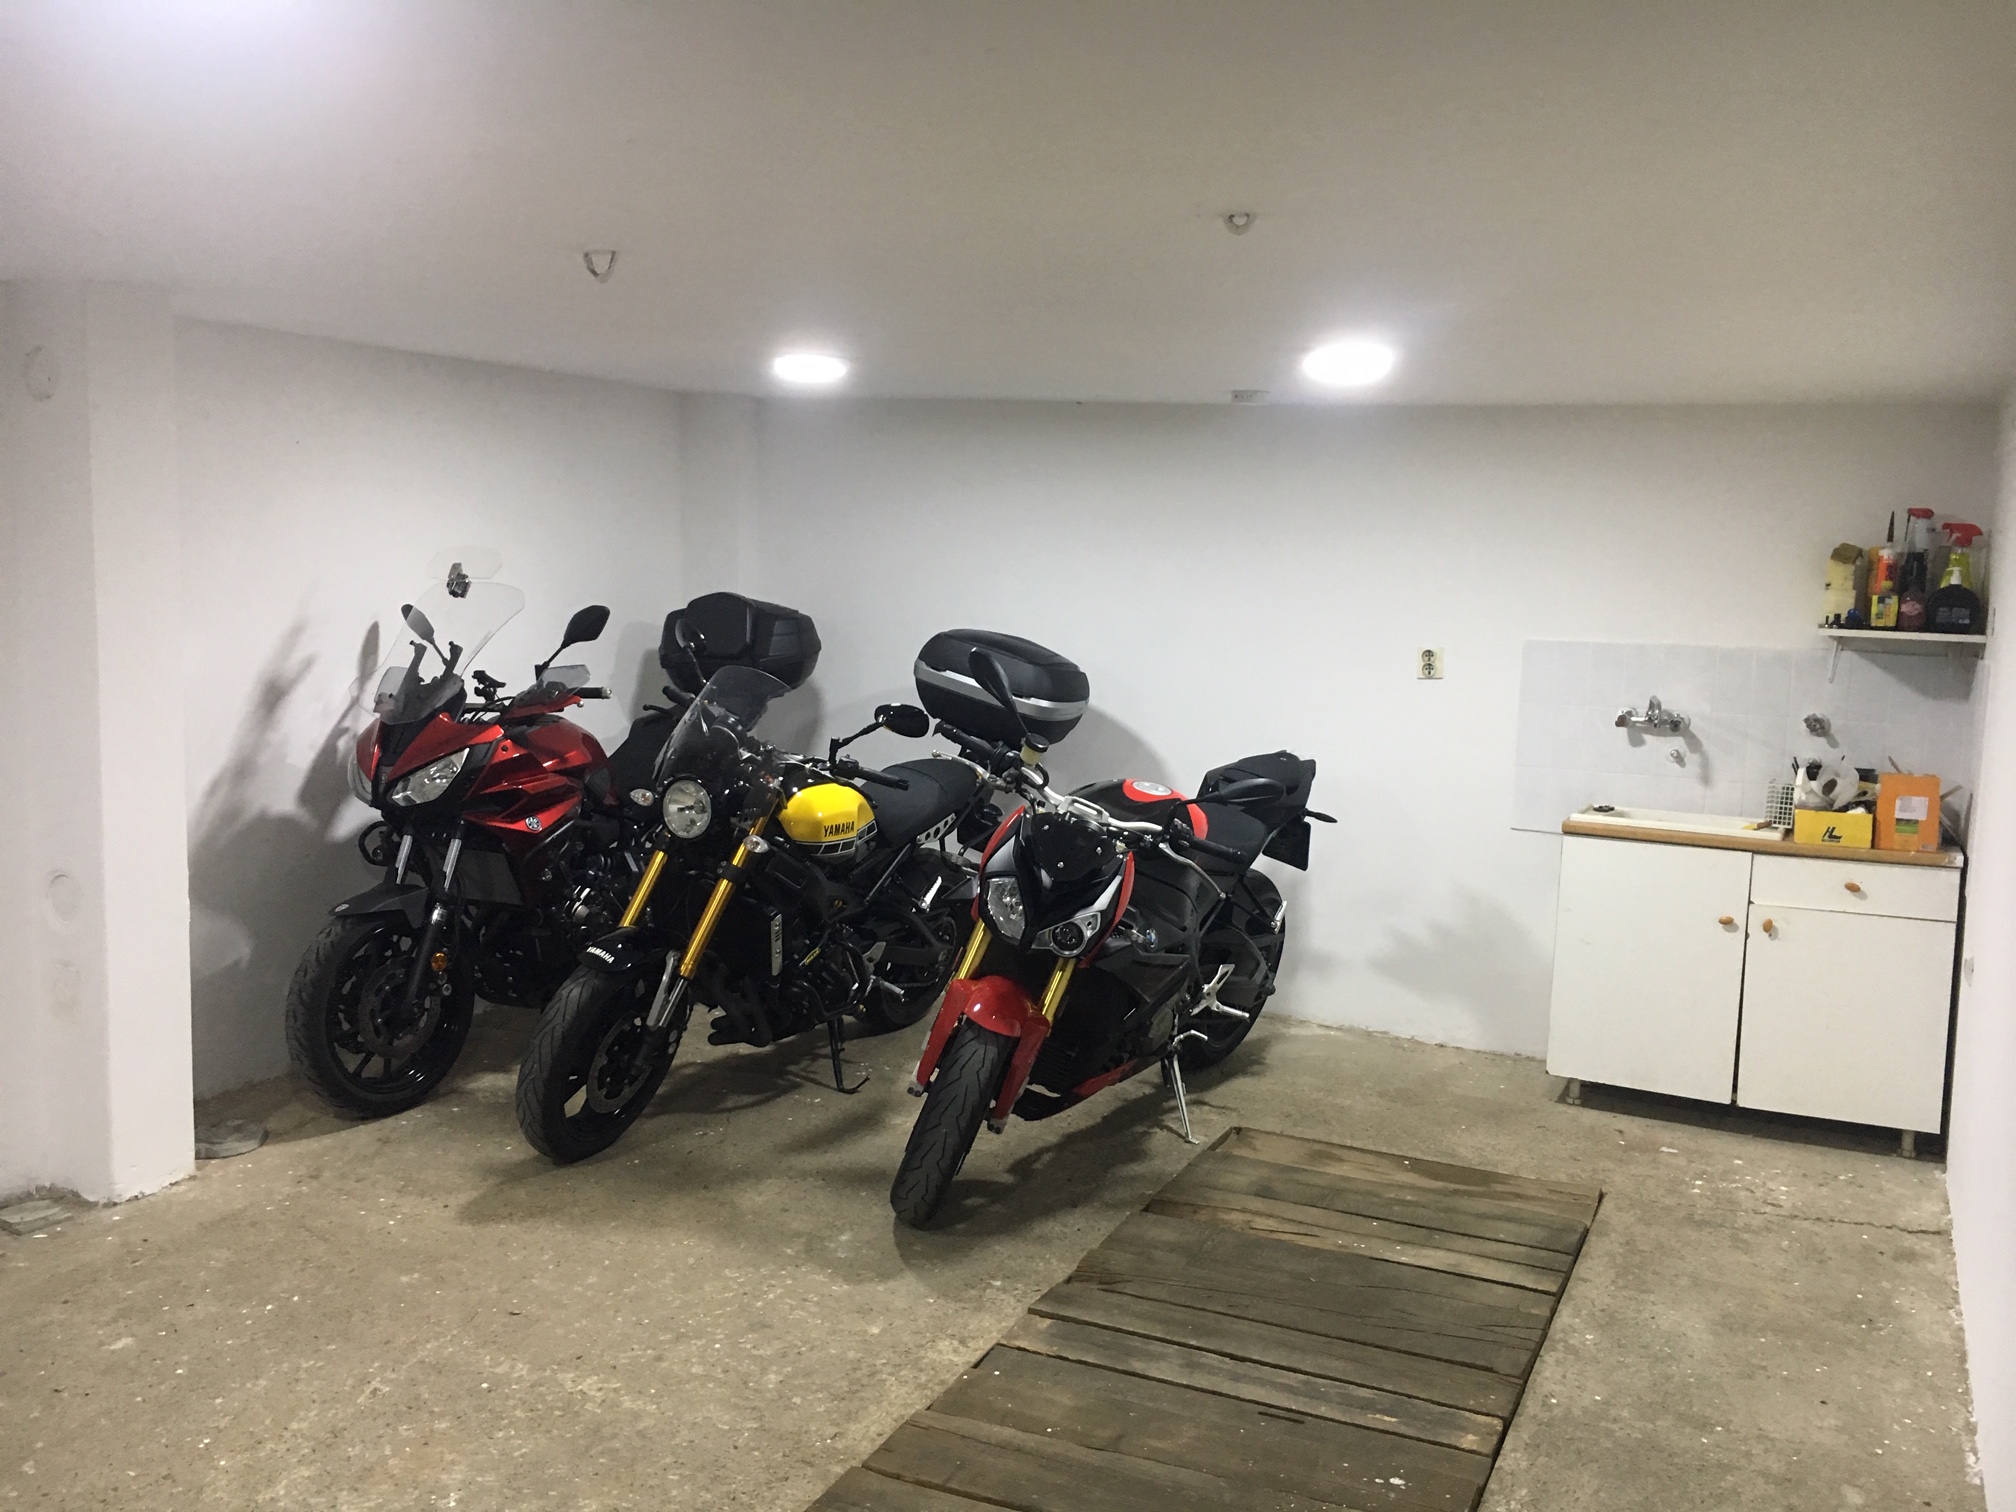 Izdajem garazu za motocikle u periodu zime